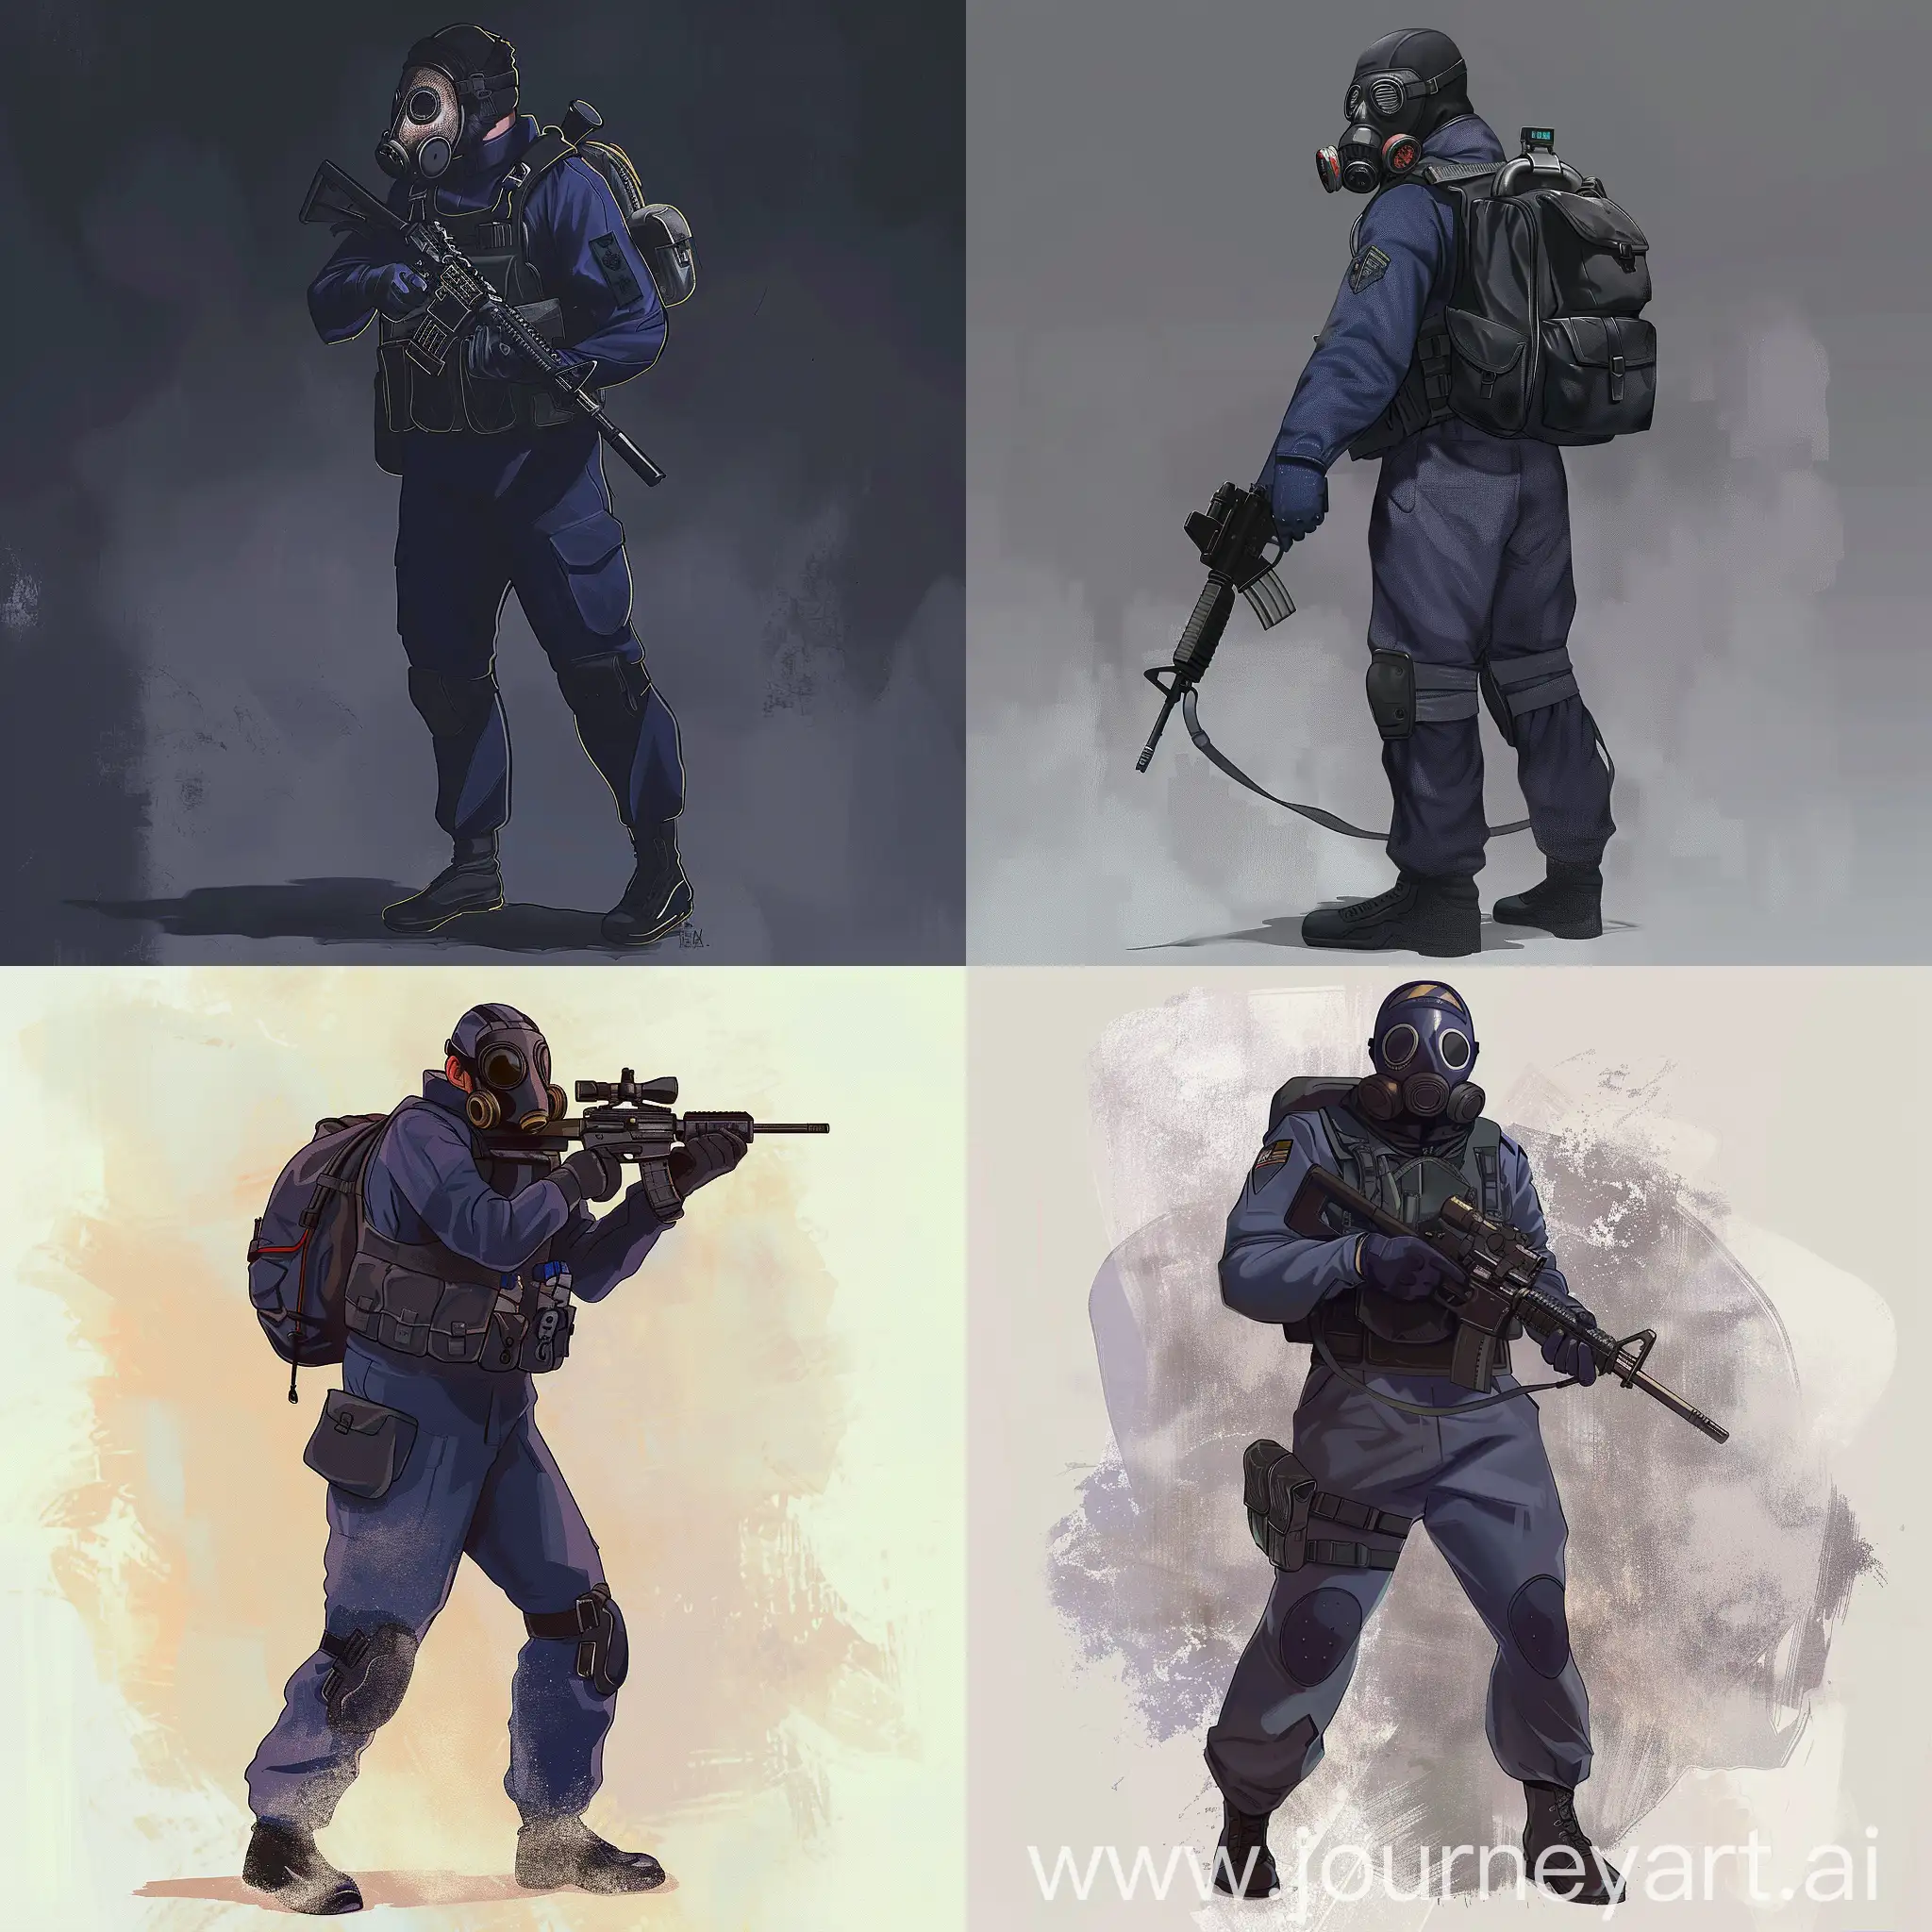 Military-Sniper-in-Dark-Purple-Hazmat-Suit-with-Sniper-Rifle